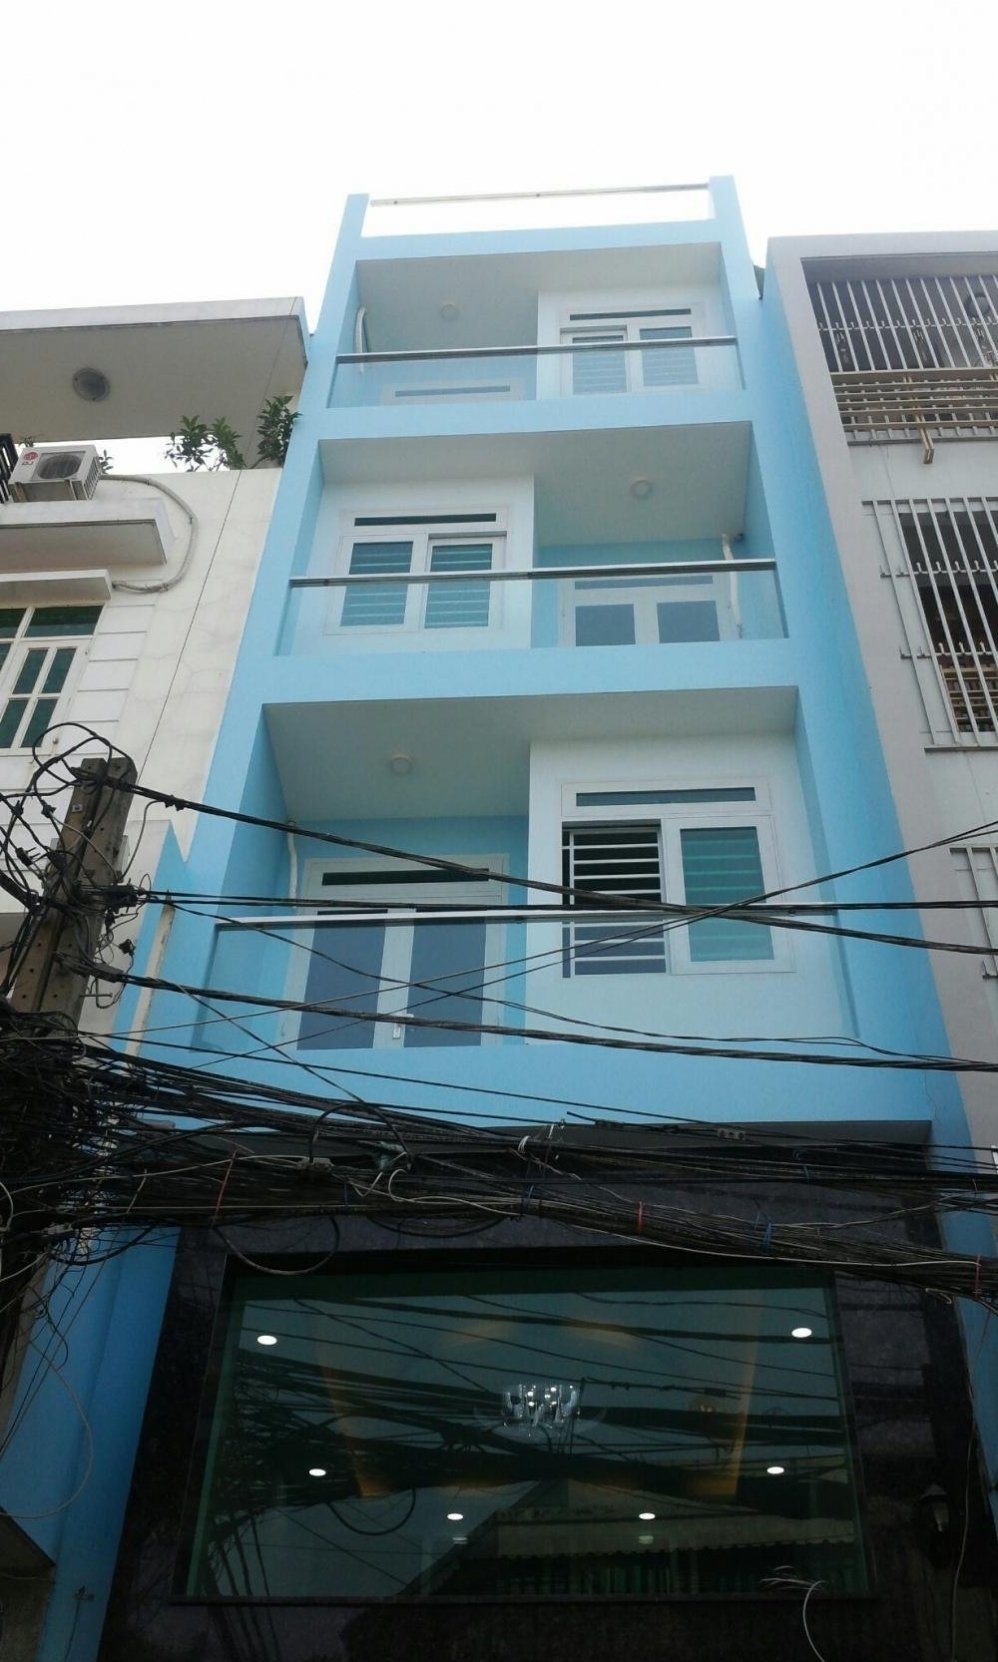  Bán nhà mặt tiền 4,2x19m Hồng Bàng P11 Q5, nằm giữa trường học, trung tâm mua sắm, cơ sở kinh doanh